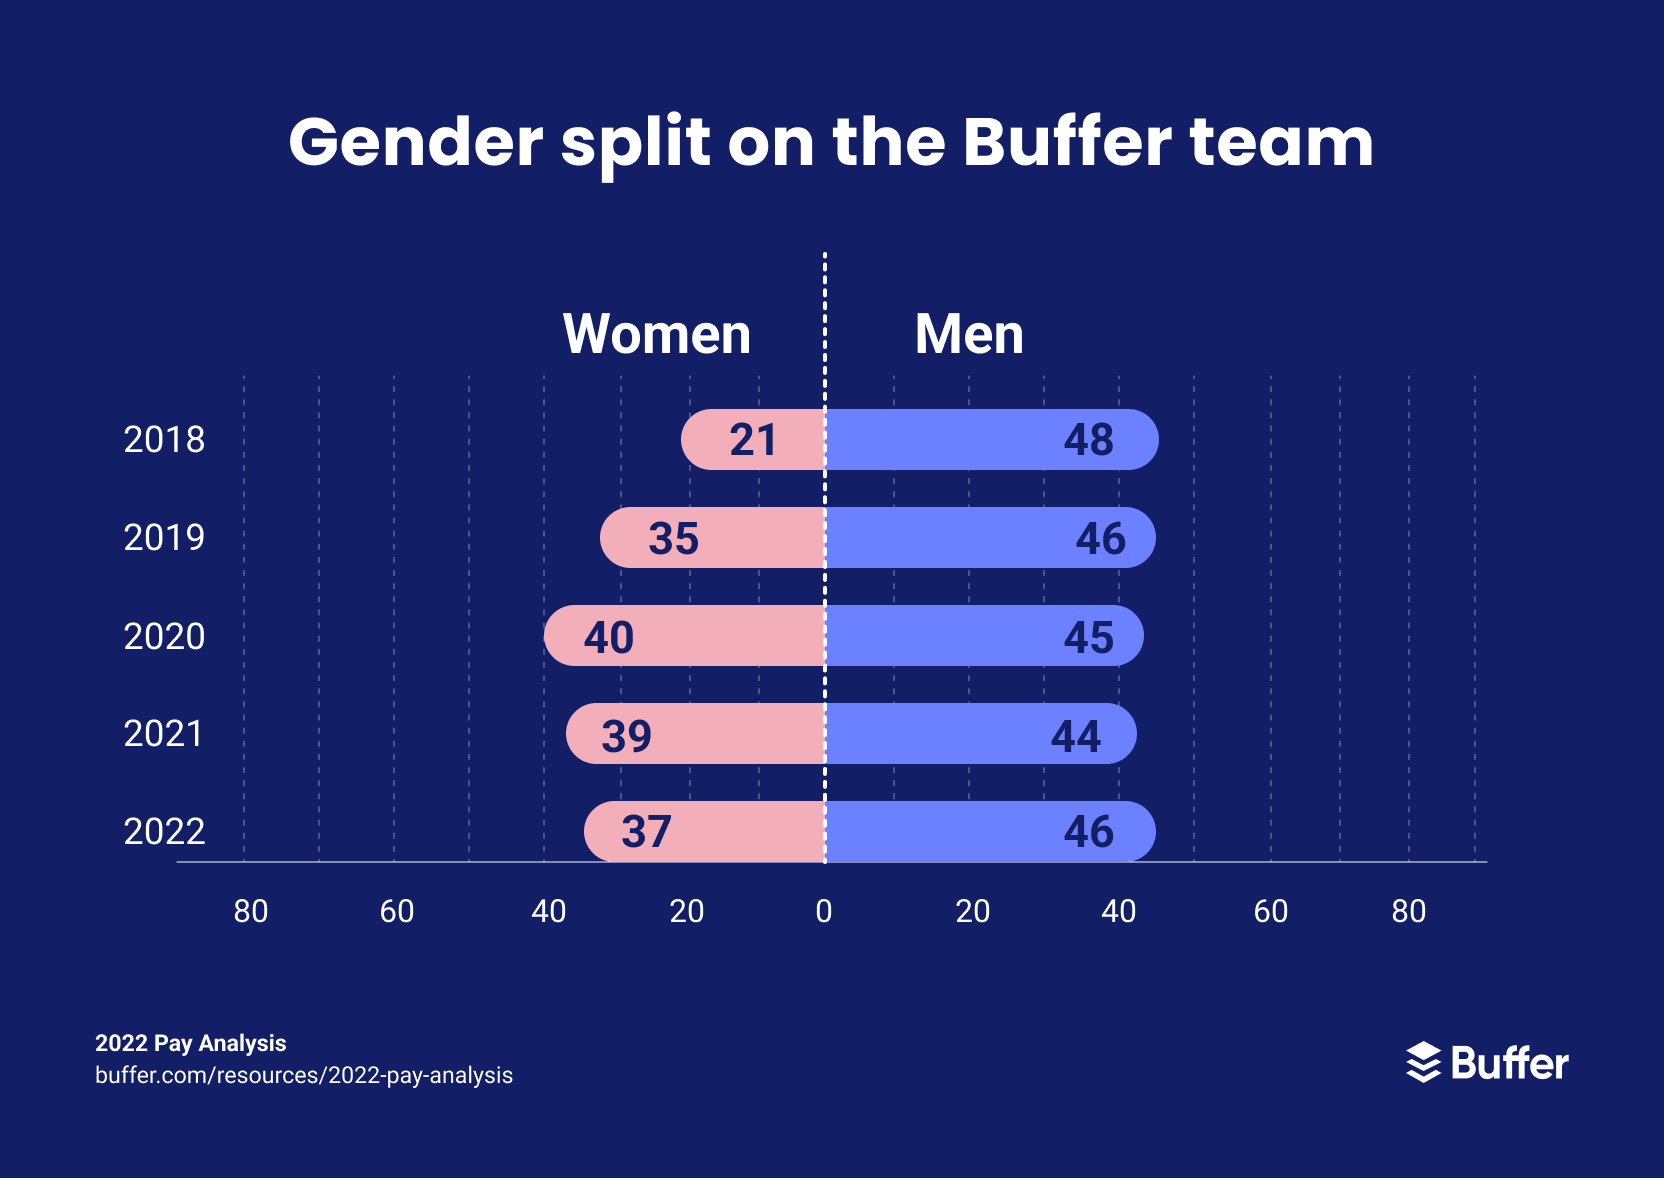 Gender split on the Buffer team from 2018 - 2022